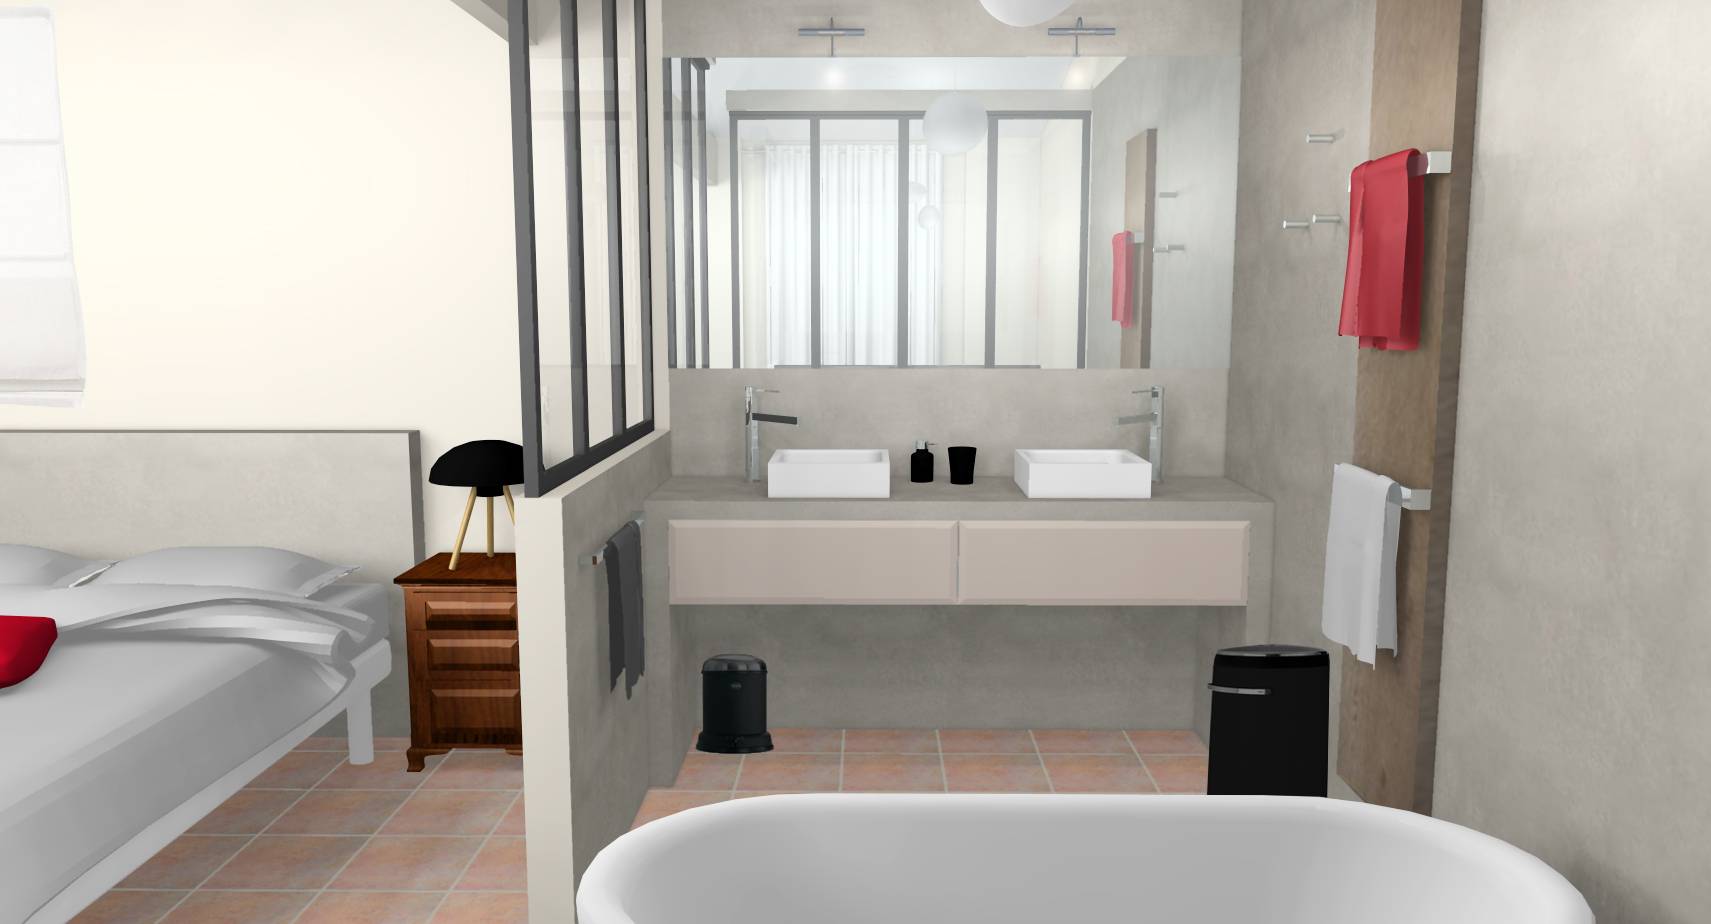 Chambre salle de bain verrière industrielle béton ciré mélange mobilier moderne ancien vasques posées mitigeurs hauts